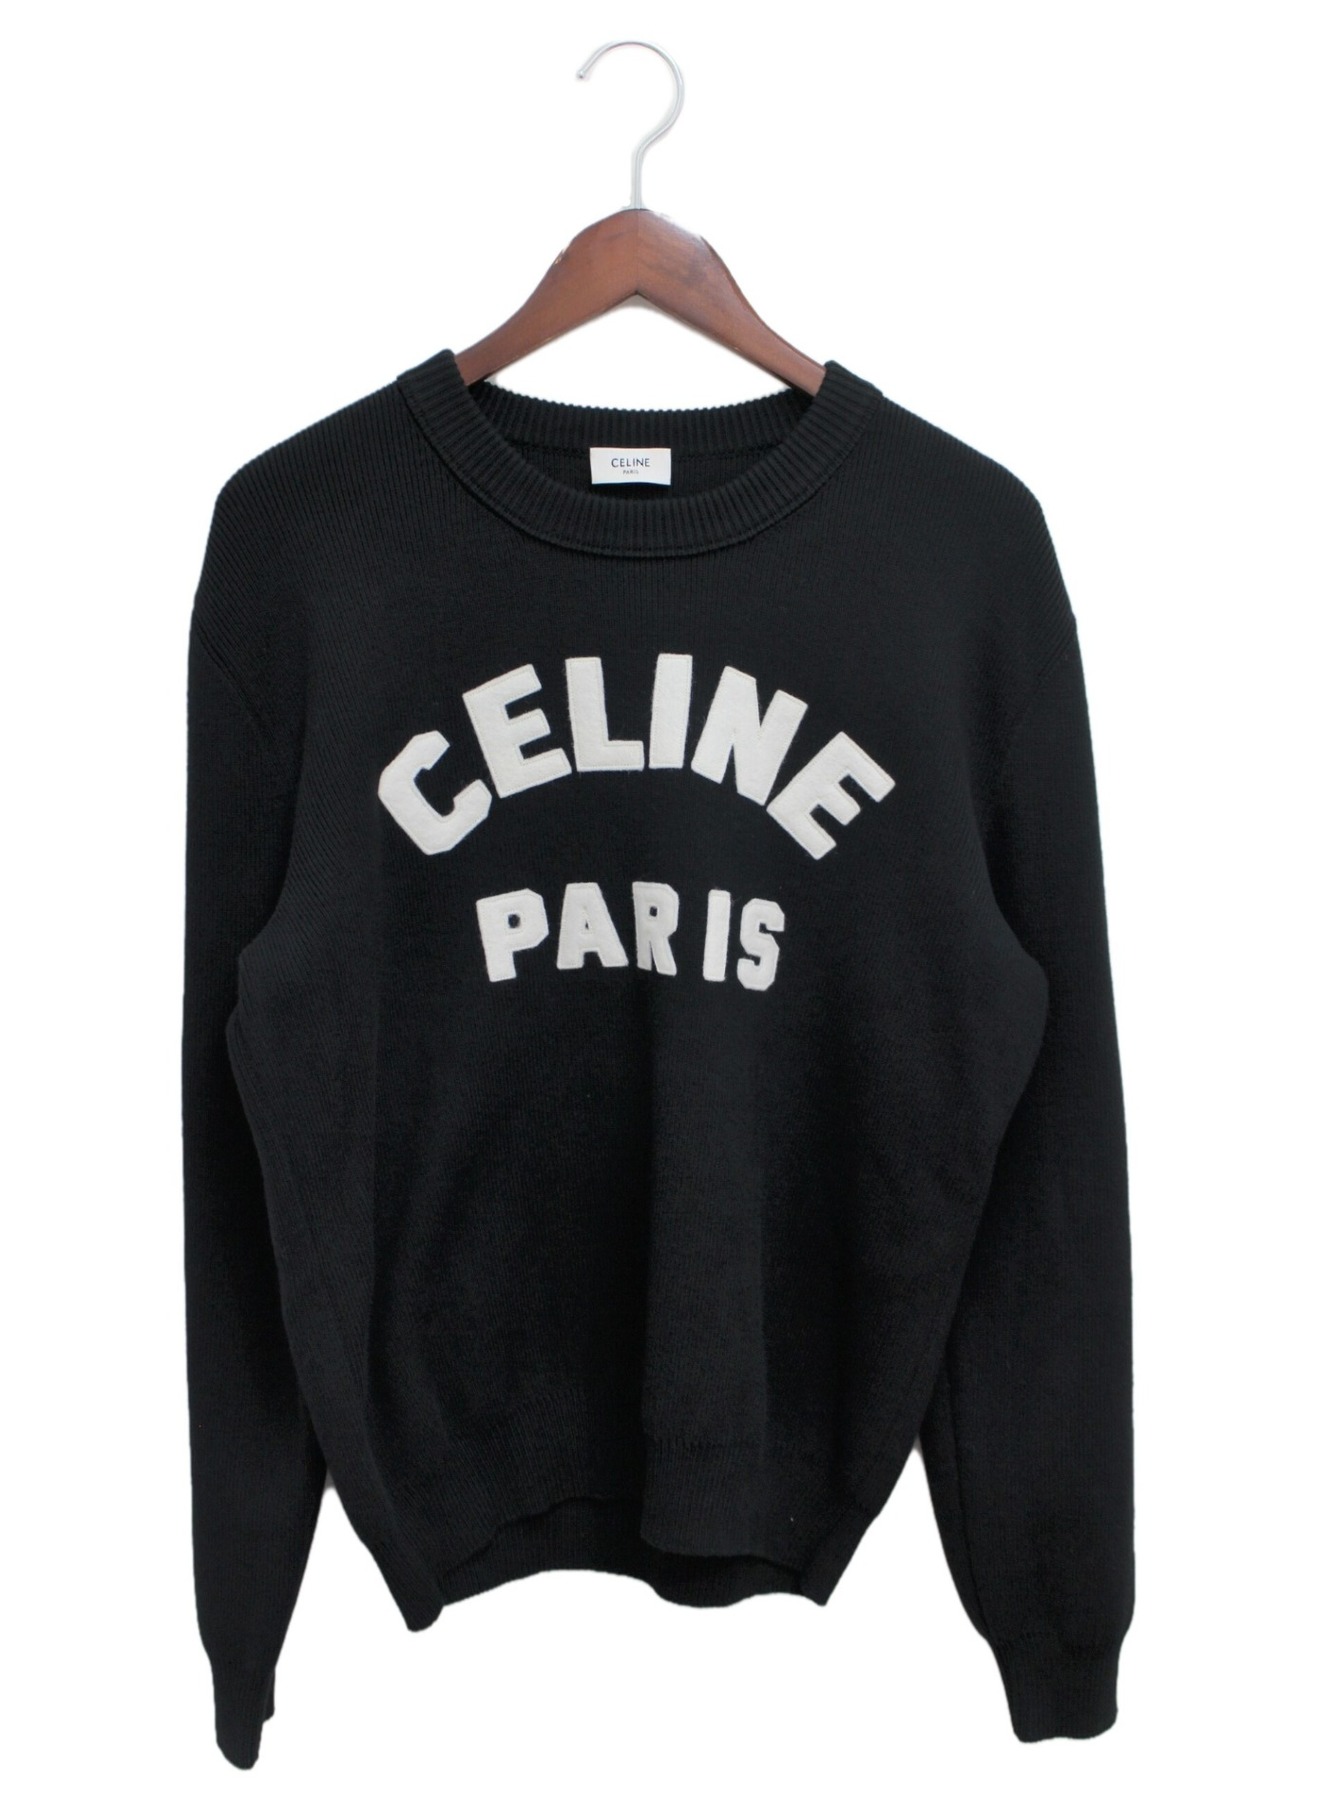 CELINE (セリーヌ) フロッククルーネックセーター ブラック サイズ:M